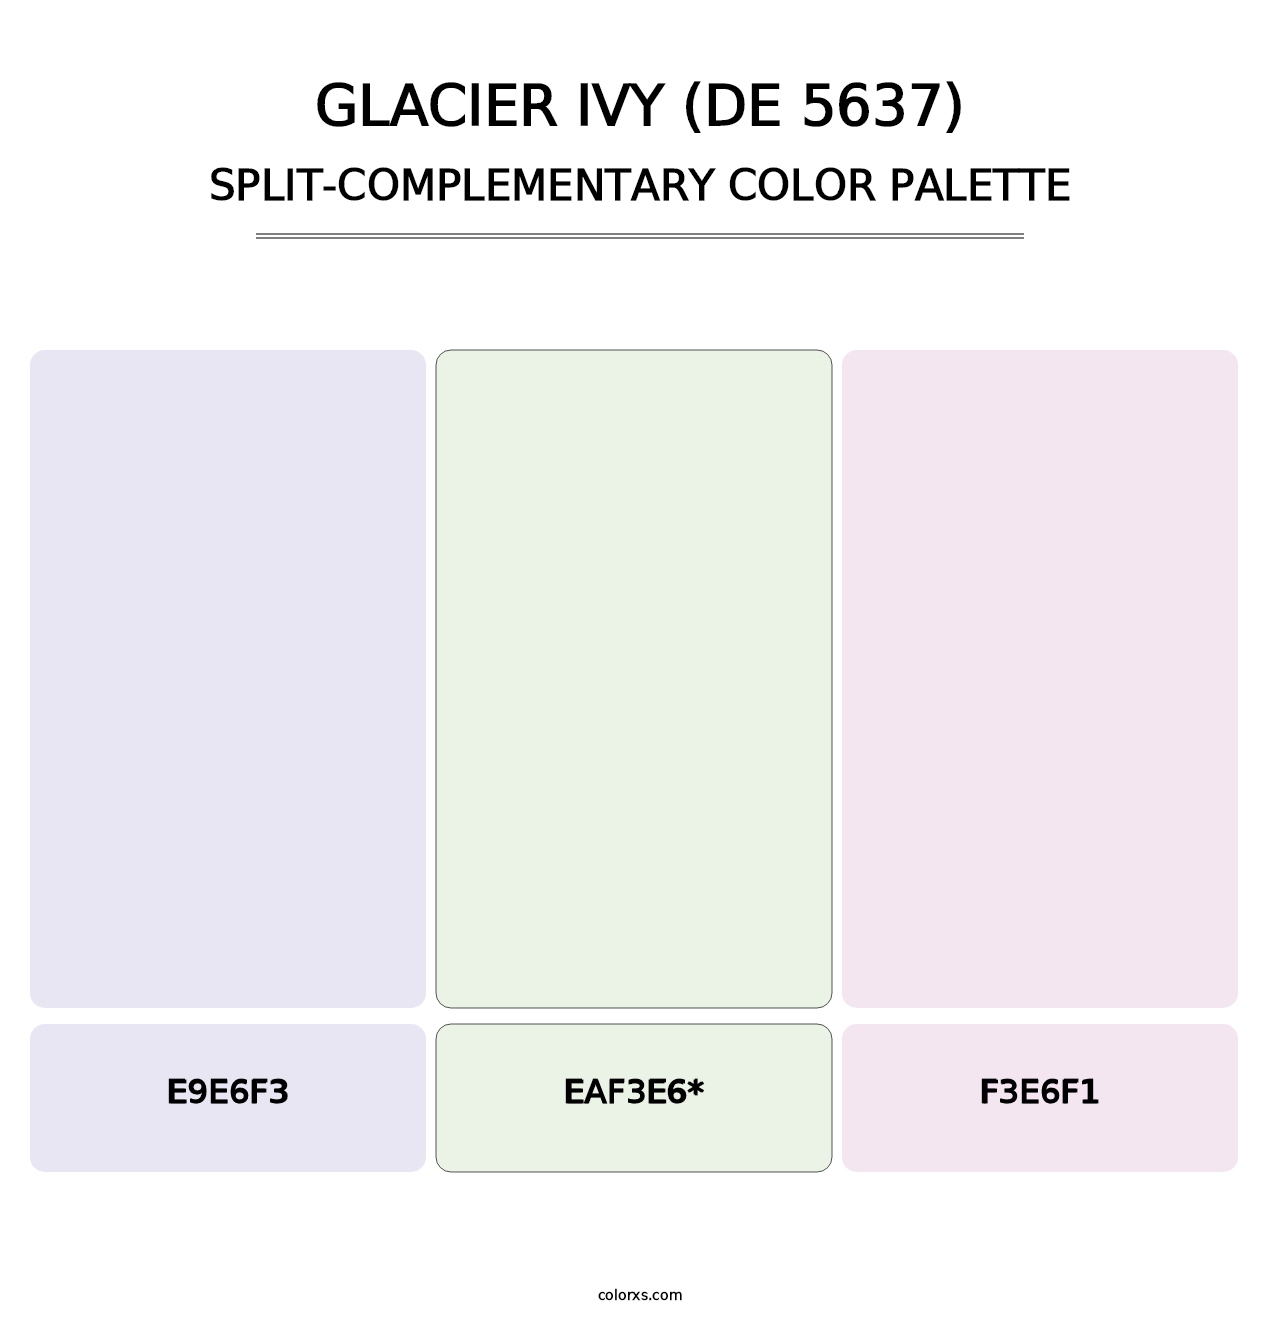 Glacier Ivy (DE 5637) - Split-Complementary Color Palette